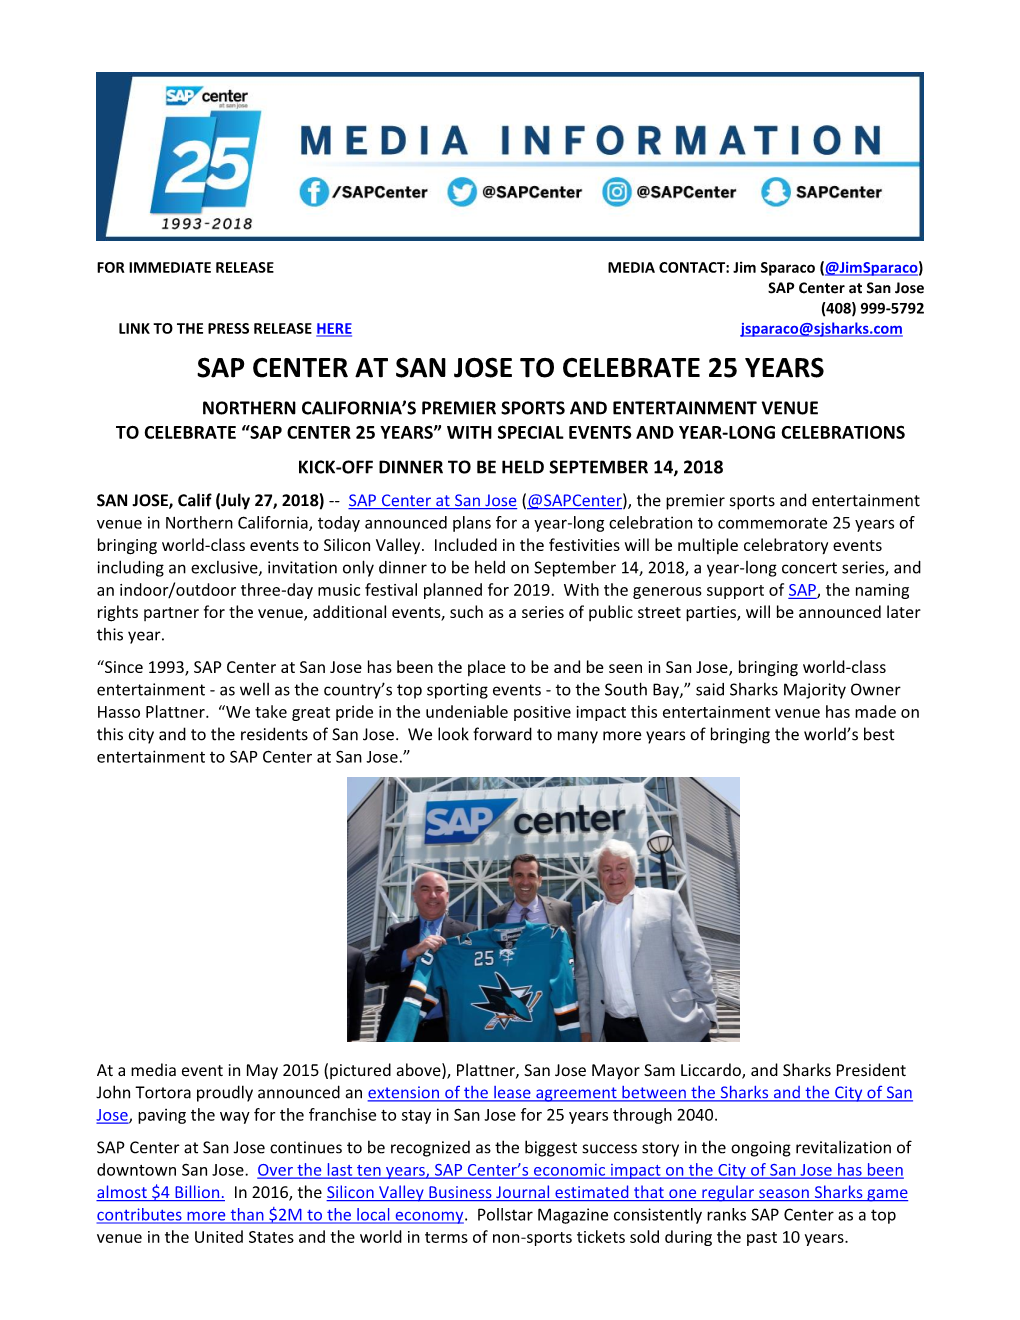 Sap Center at San Jose to Celebrate 25 Years